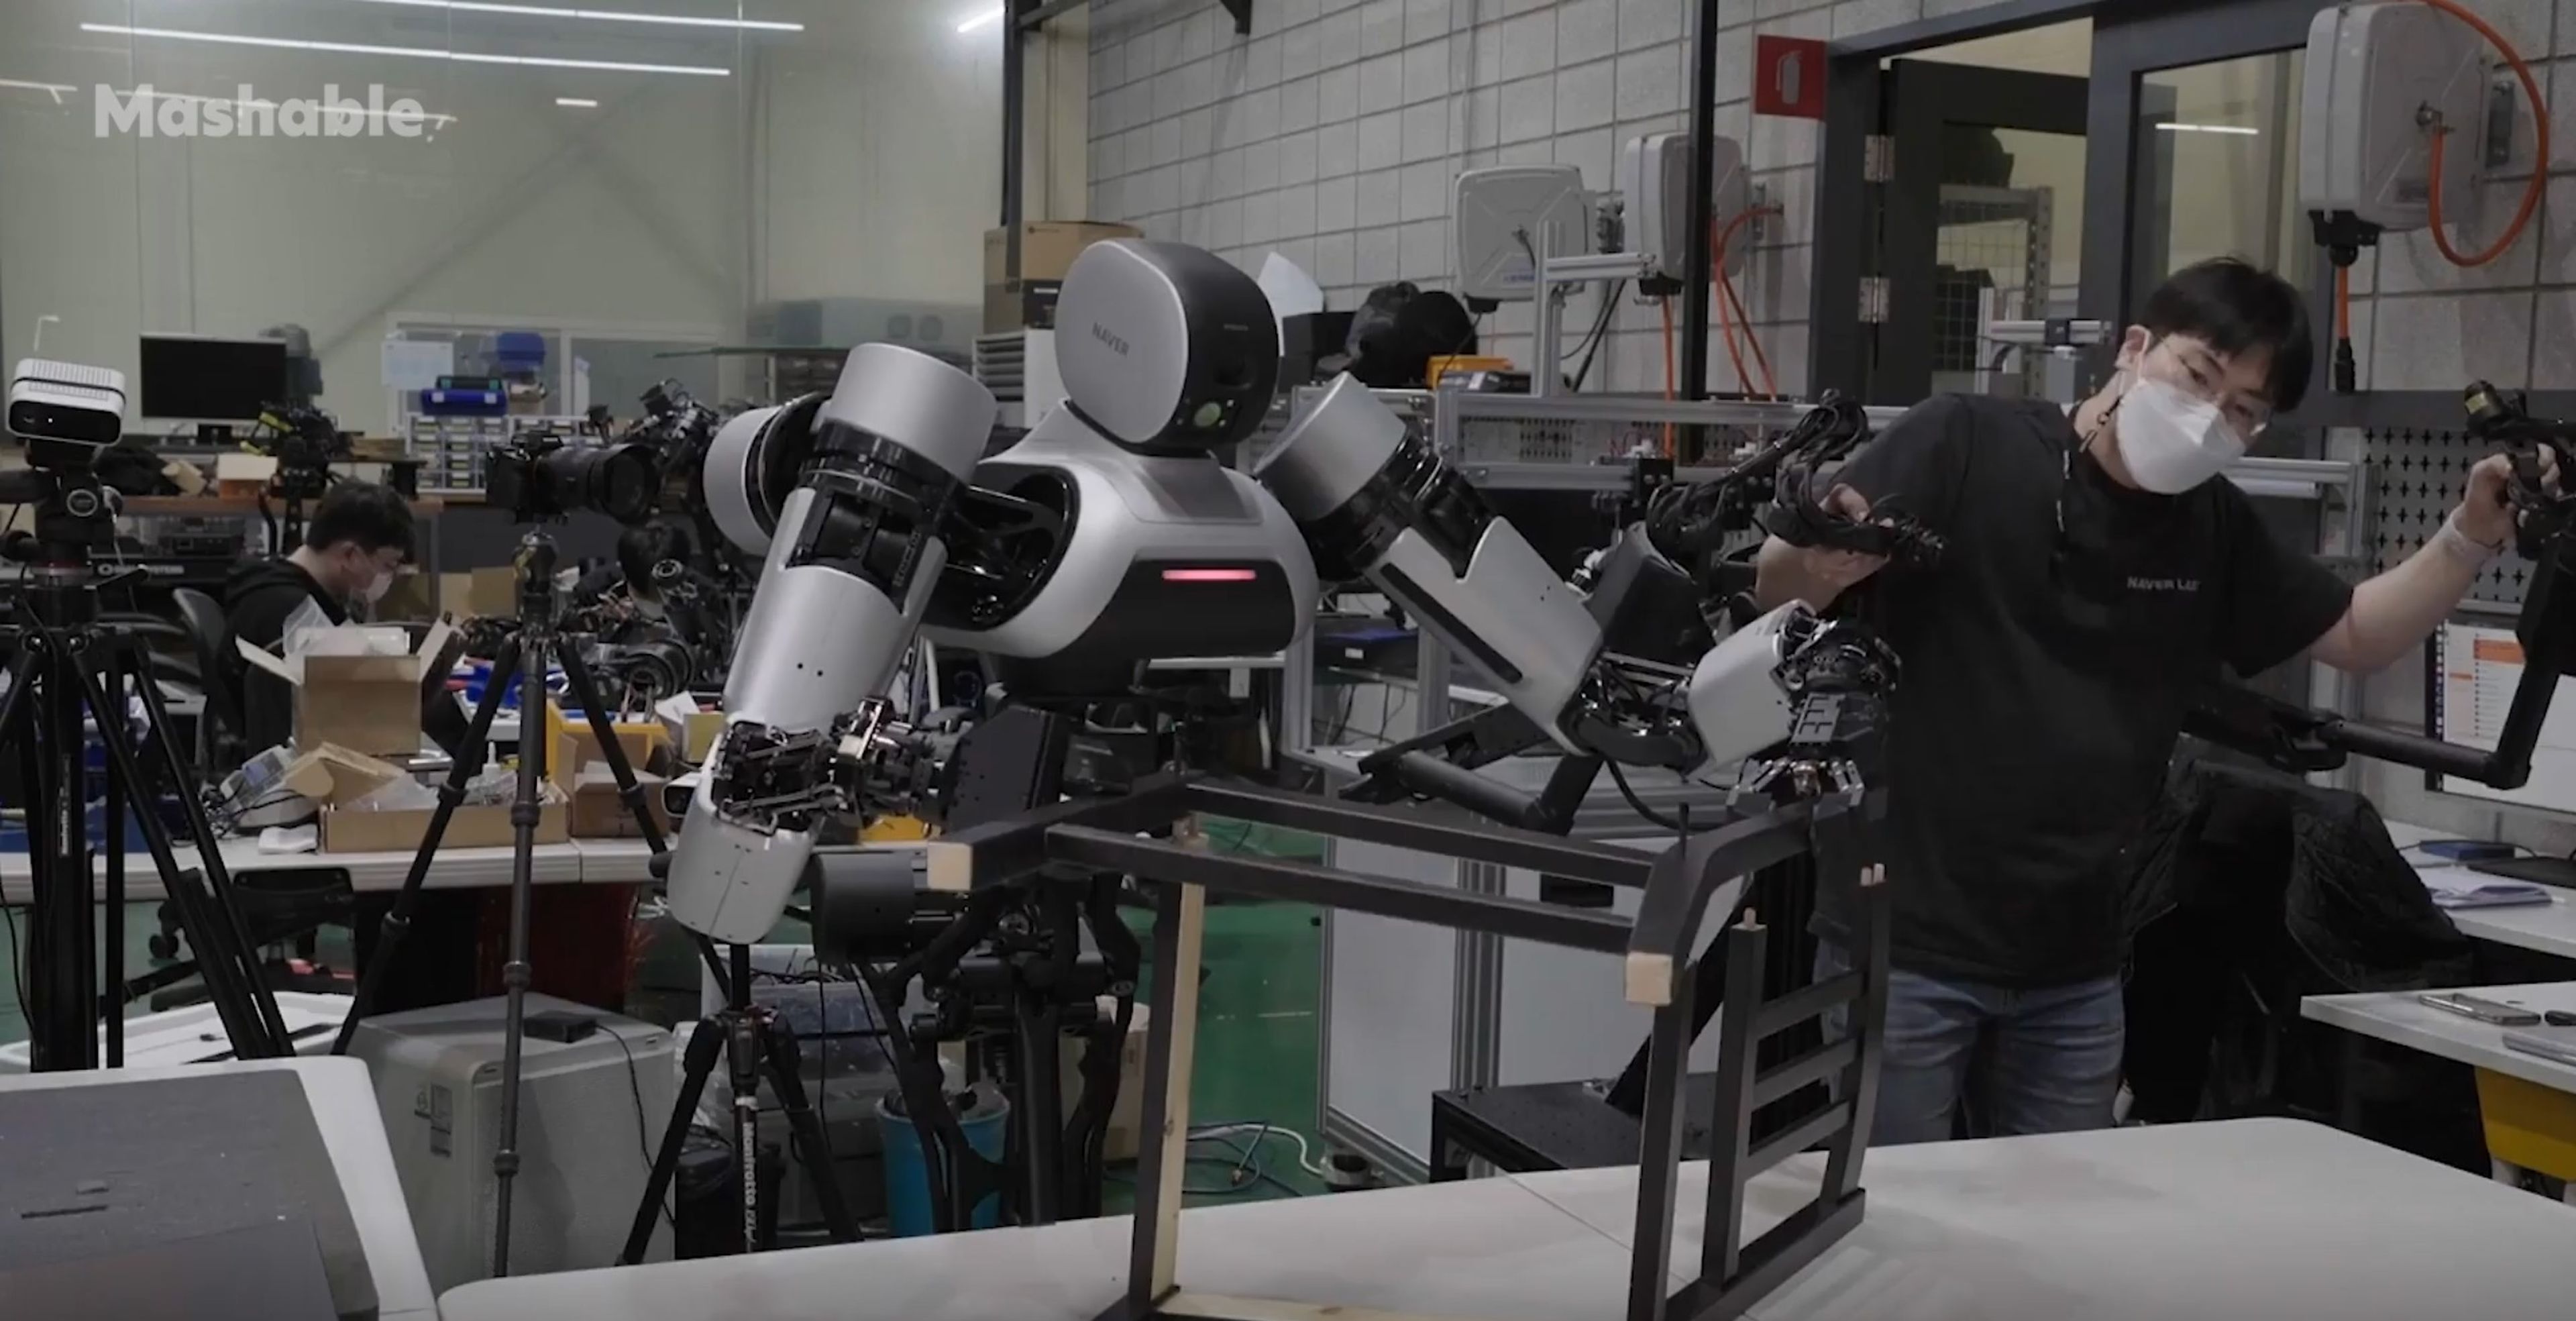 Por fin un robot que consigue hacer algo útil: montar muebles de IKEA